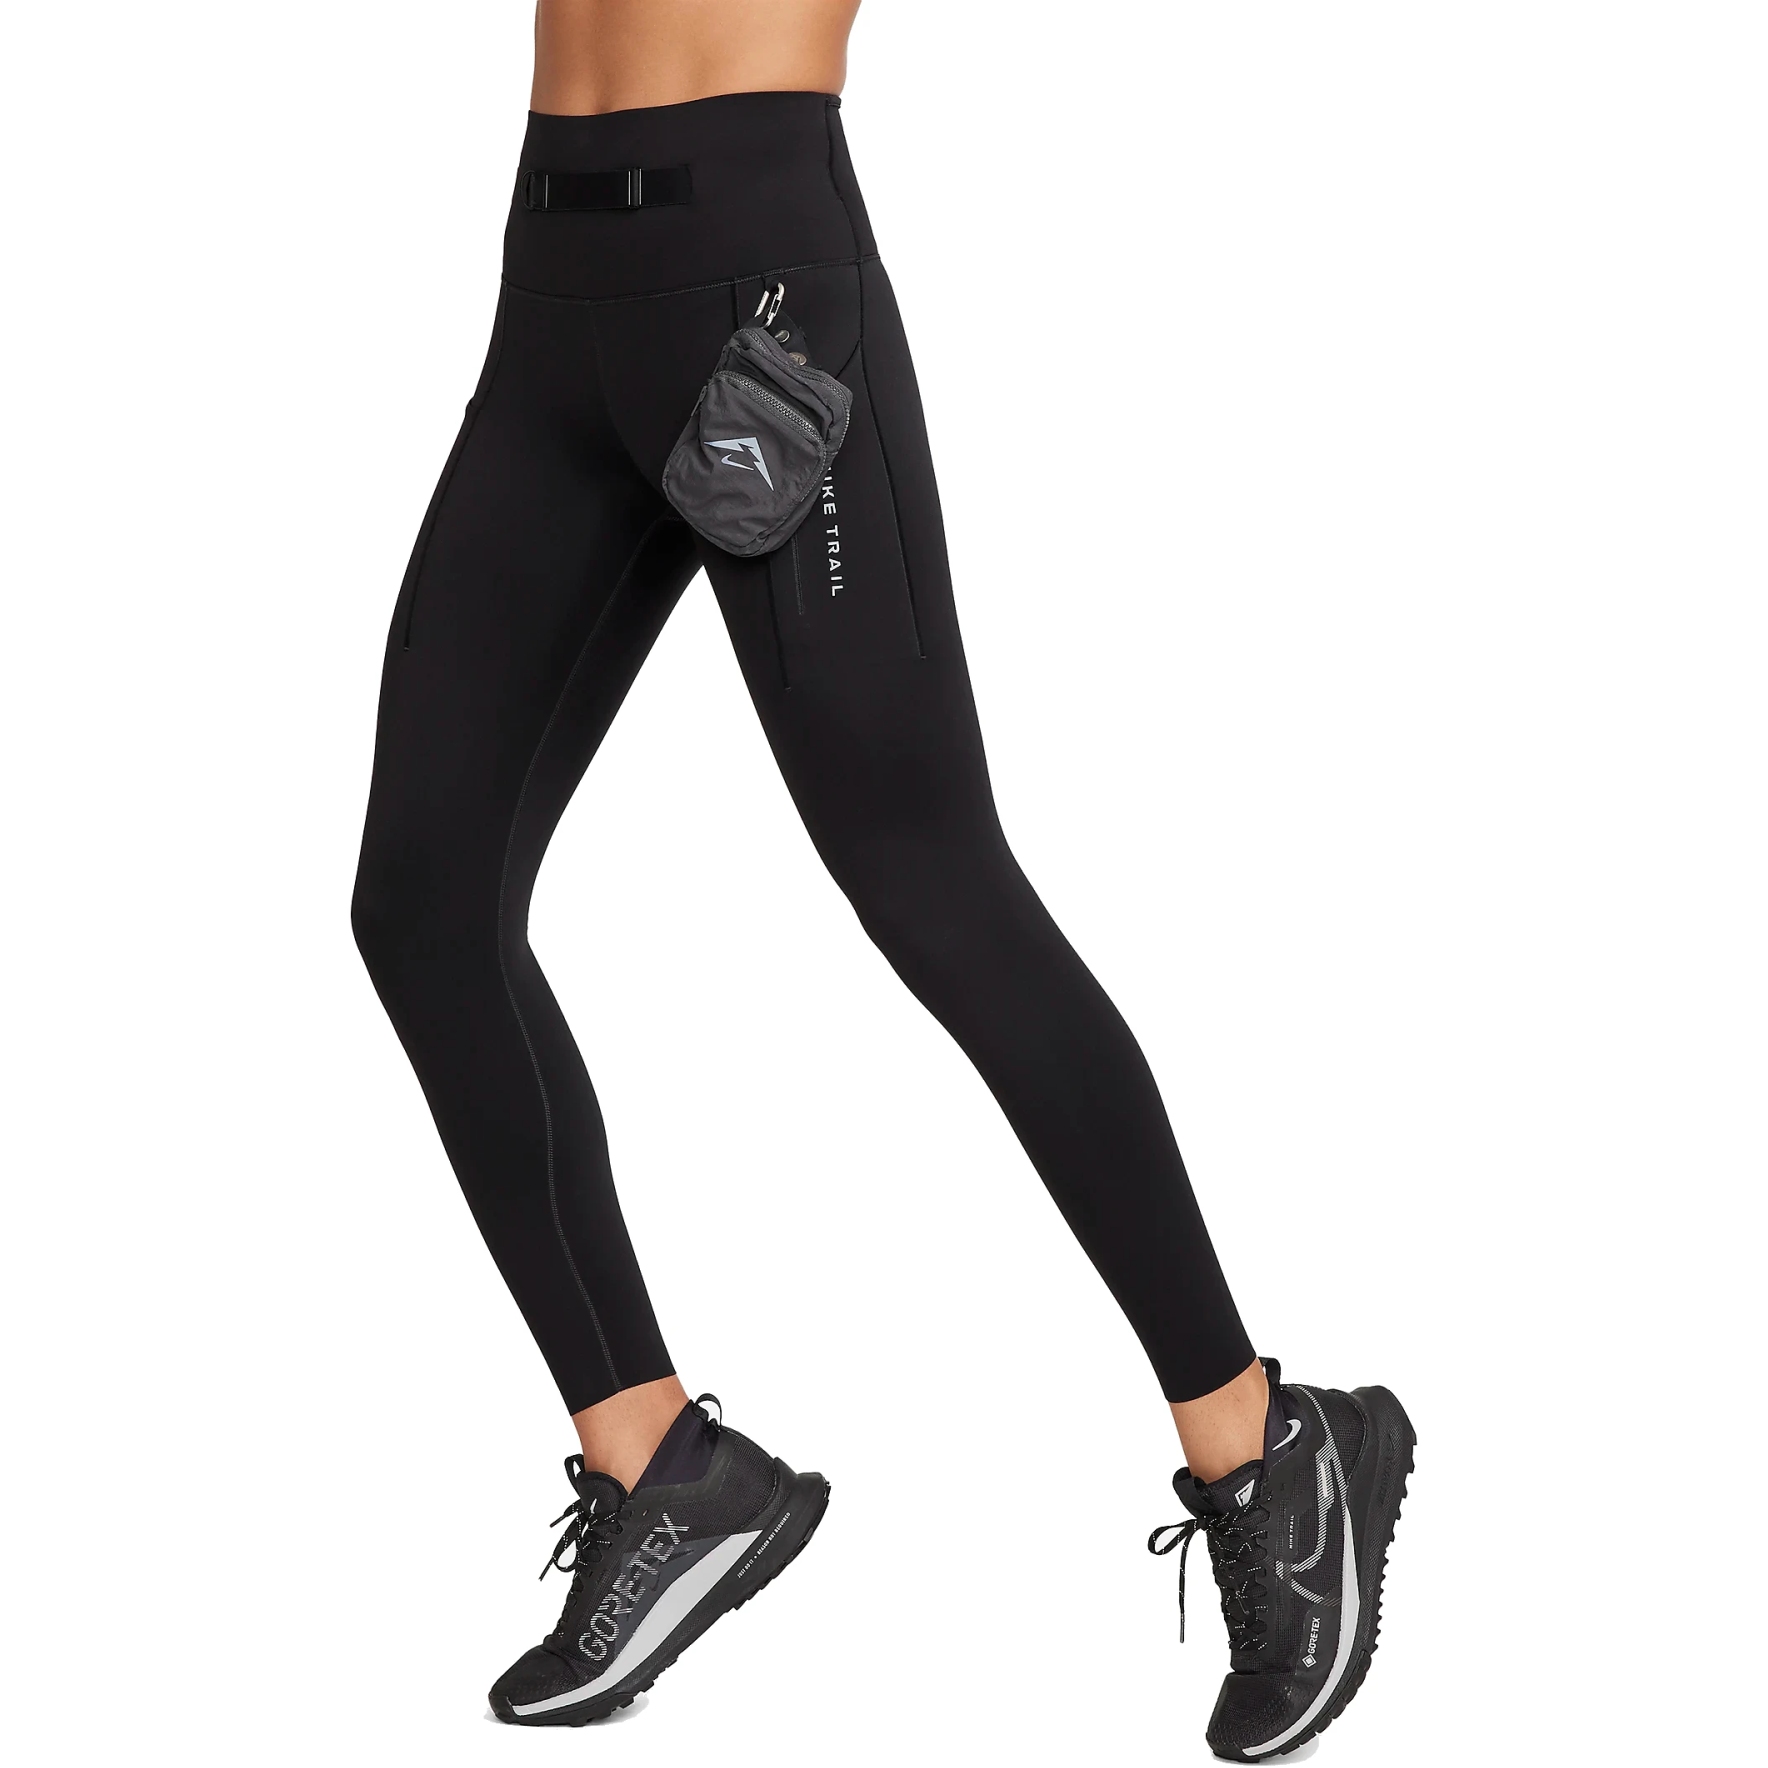 Produktbild von Nike Trail Go Firm-Support 7/8 Leggings Damen - schwarz FN2664-010